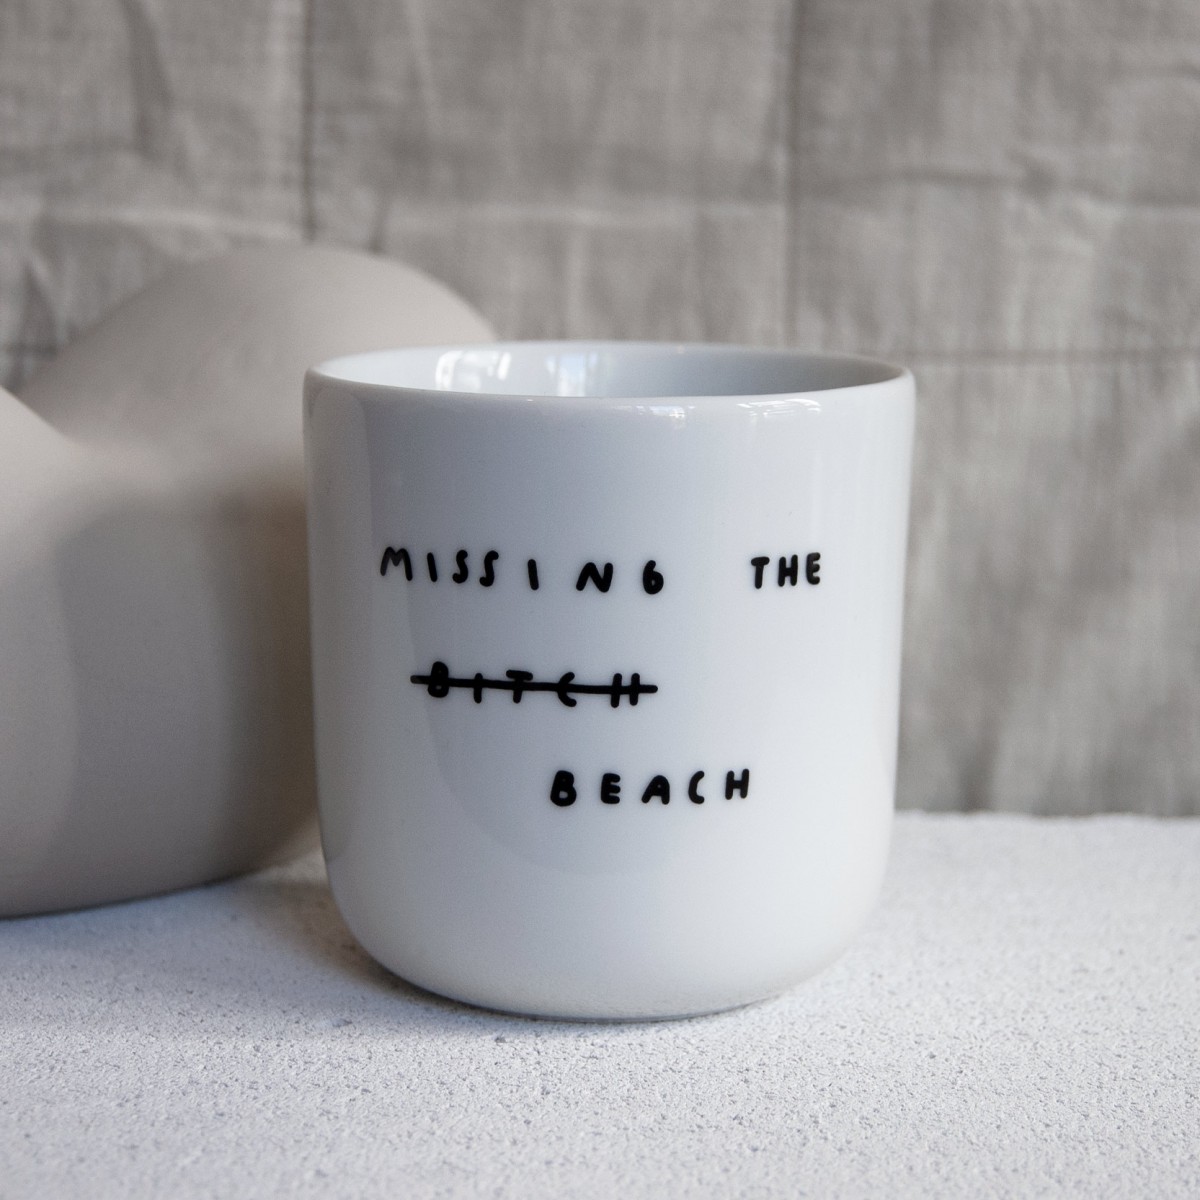 MISSING THE BEACH Becher – Johanna Schwarzer